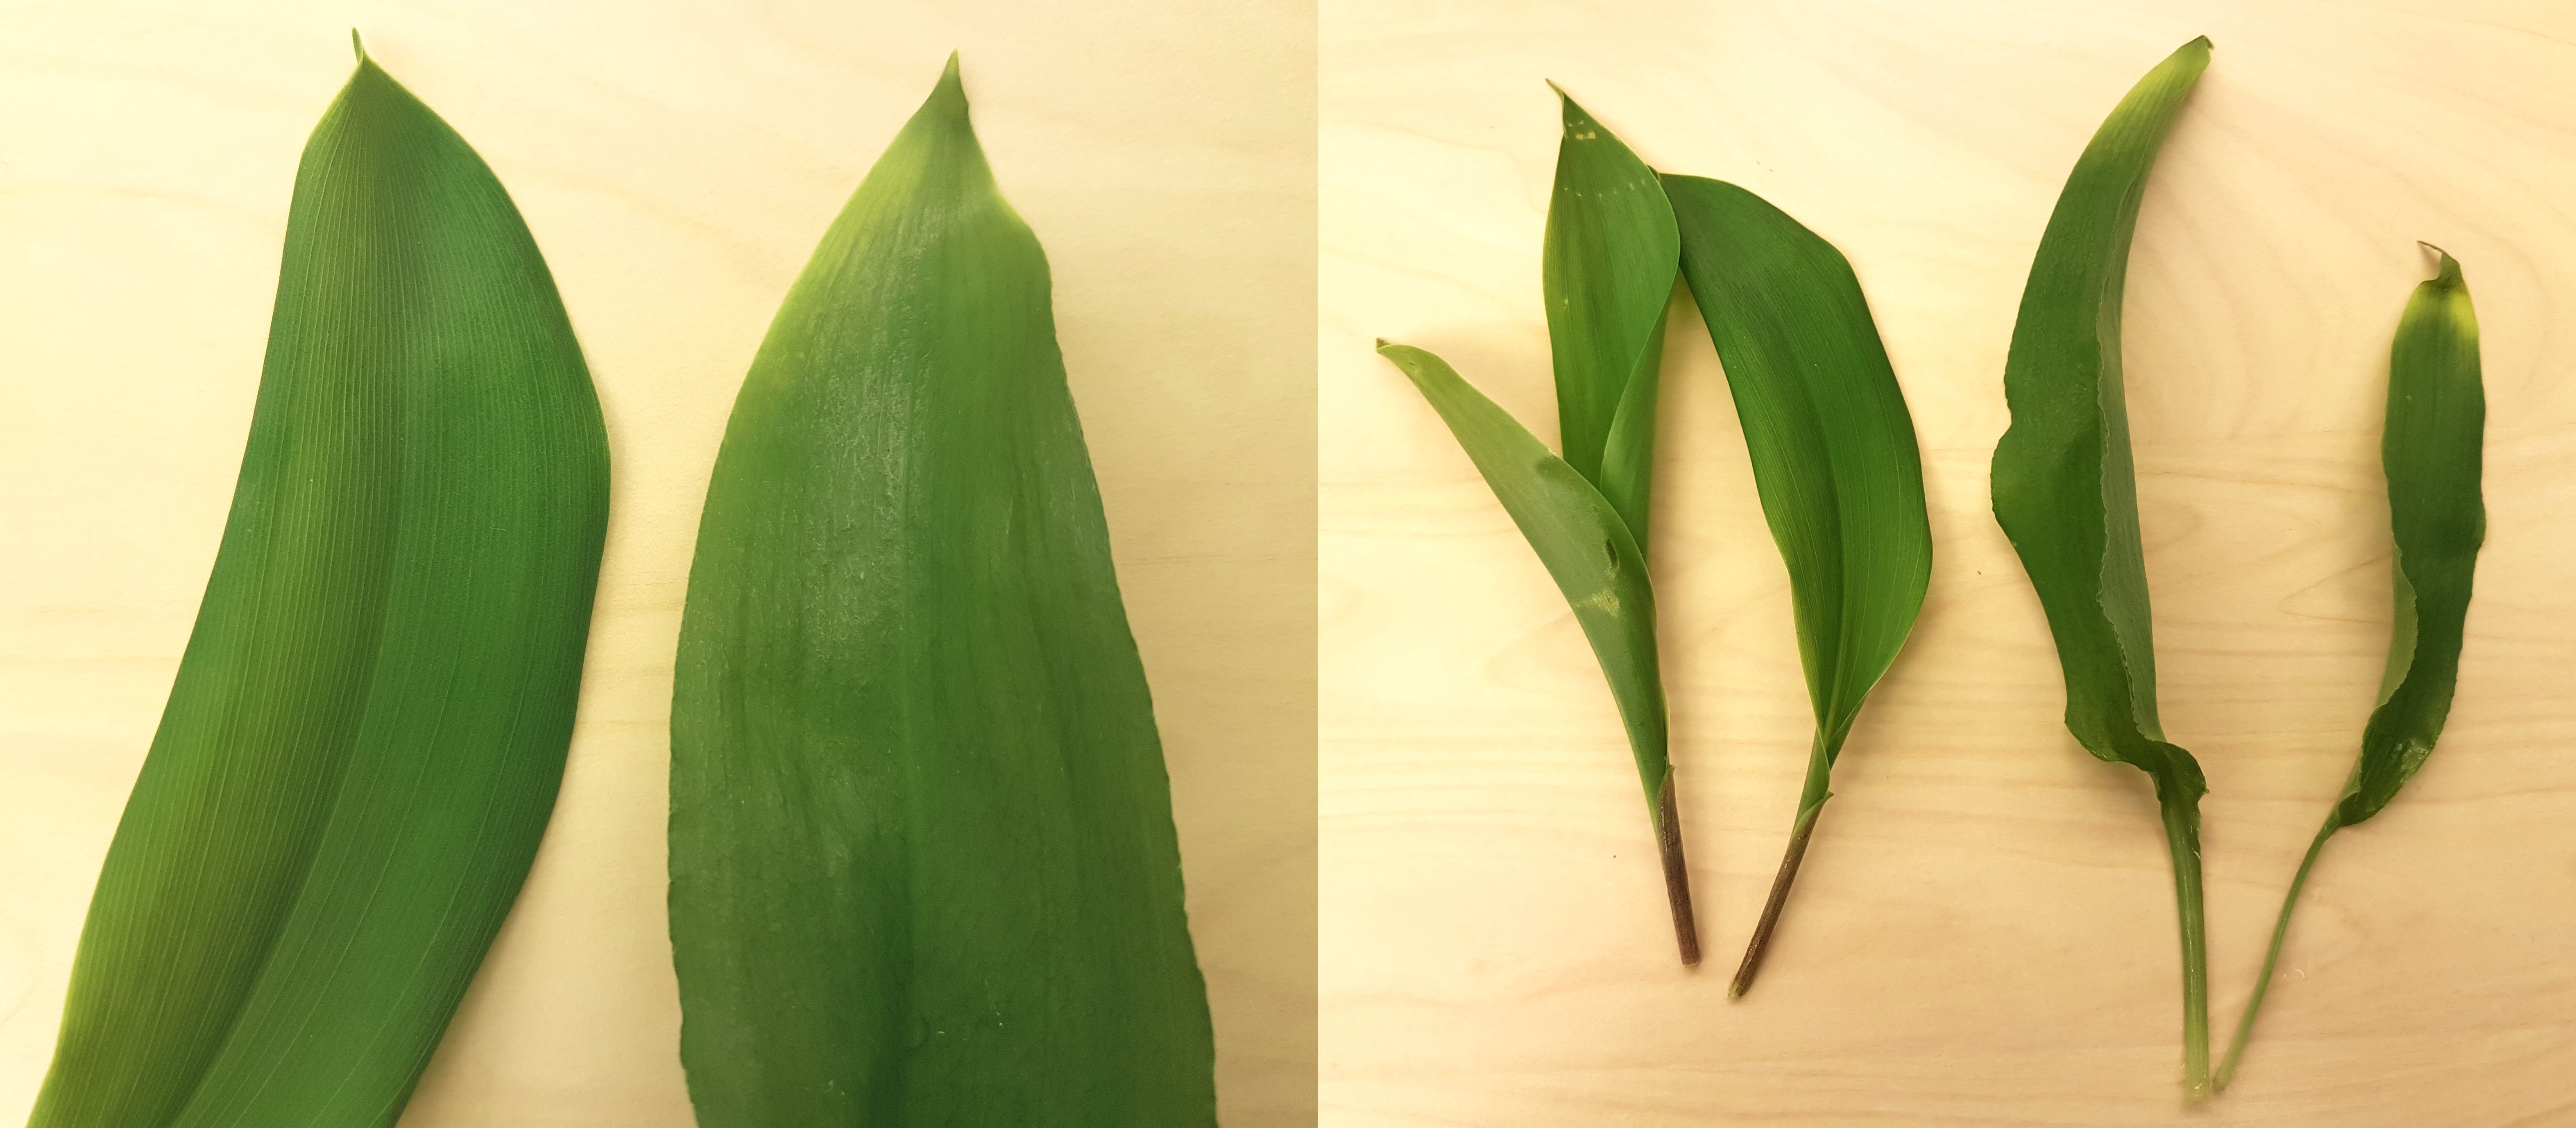 Det er en liten forskjell i strukturen på bladverket (venstre bilde), hvor liljekonvall (t.v.) har litt tettere nerver enn nervene på ramsløk (t.h.). Høyre bilde illustrerer fargeforskjellene på stilken hos liljekonvall (t.v.)  og ramsløk (t.h.). Liljekonvall er brun i stilken, mens ramsløk er grønn i stilken.